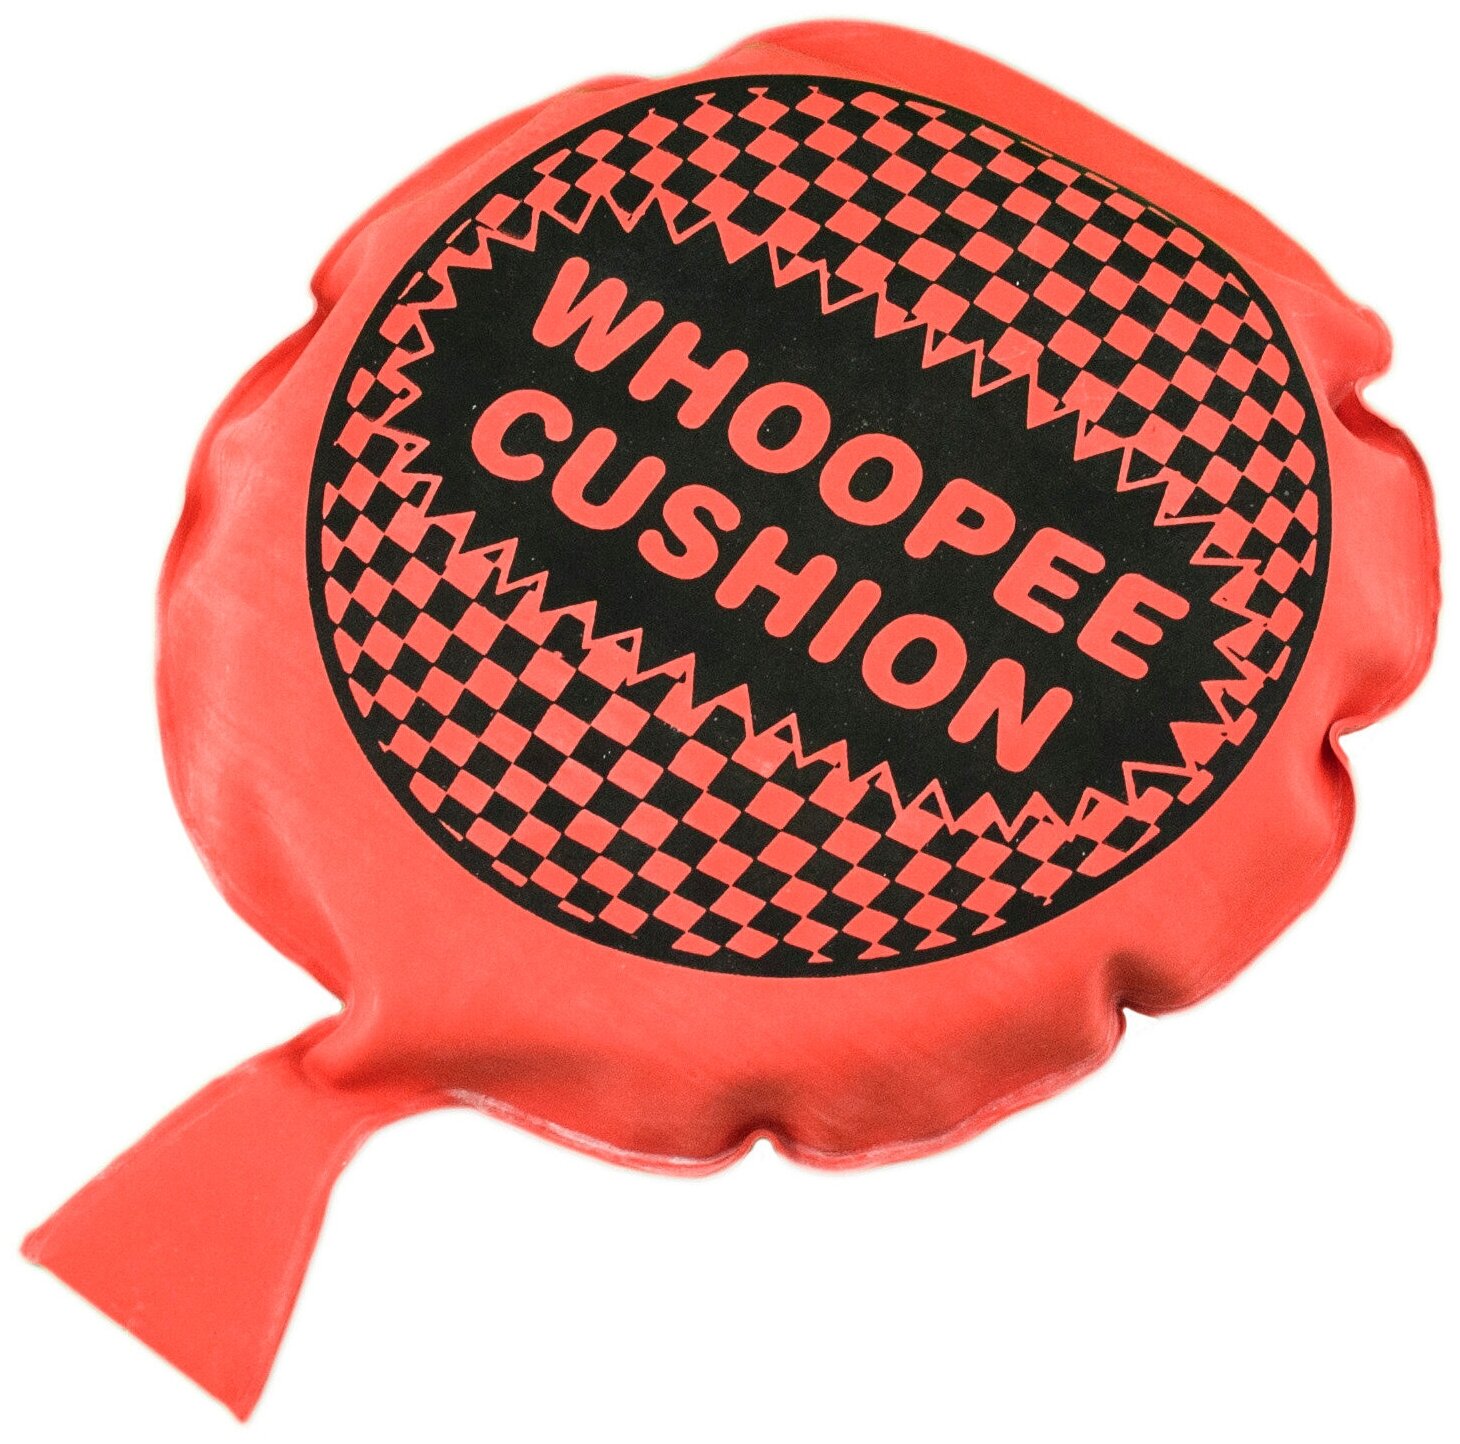 Подушка-пердушка Whopee Cushion 16.5 см красная розыгрыш, подарок мальчику, девочке, универсальный подарок детский с приколом, шуткой